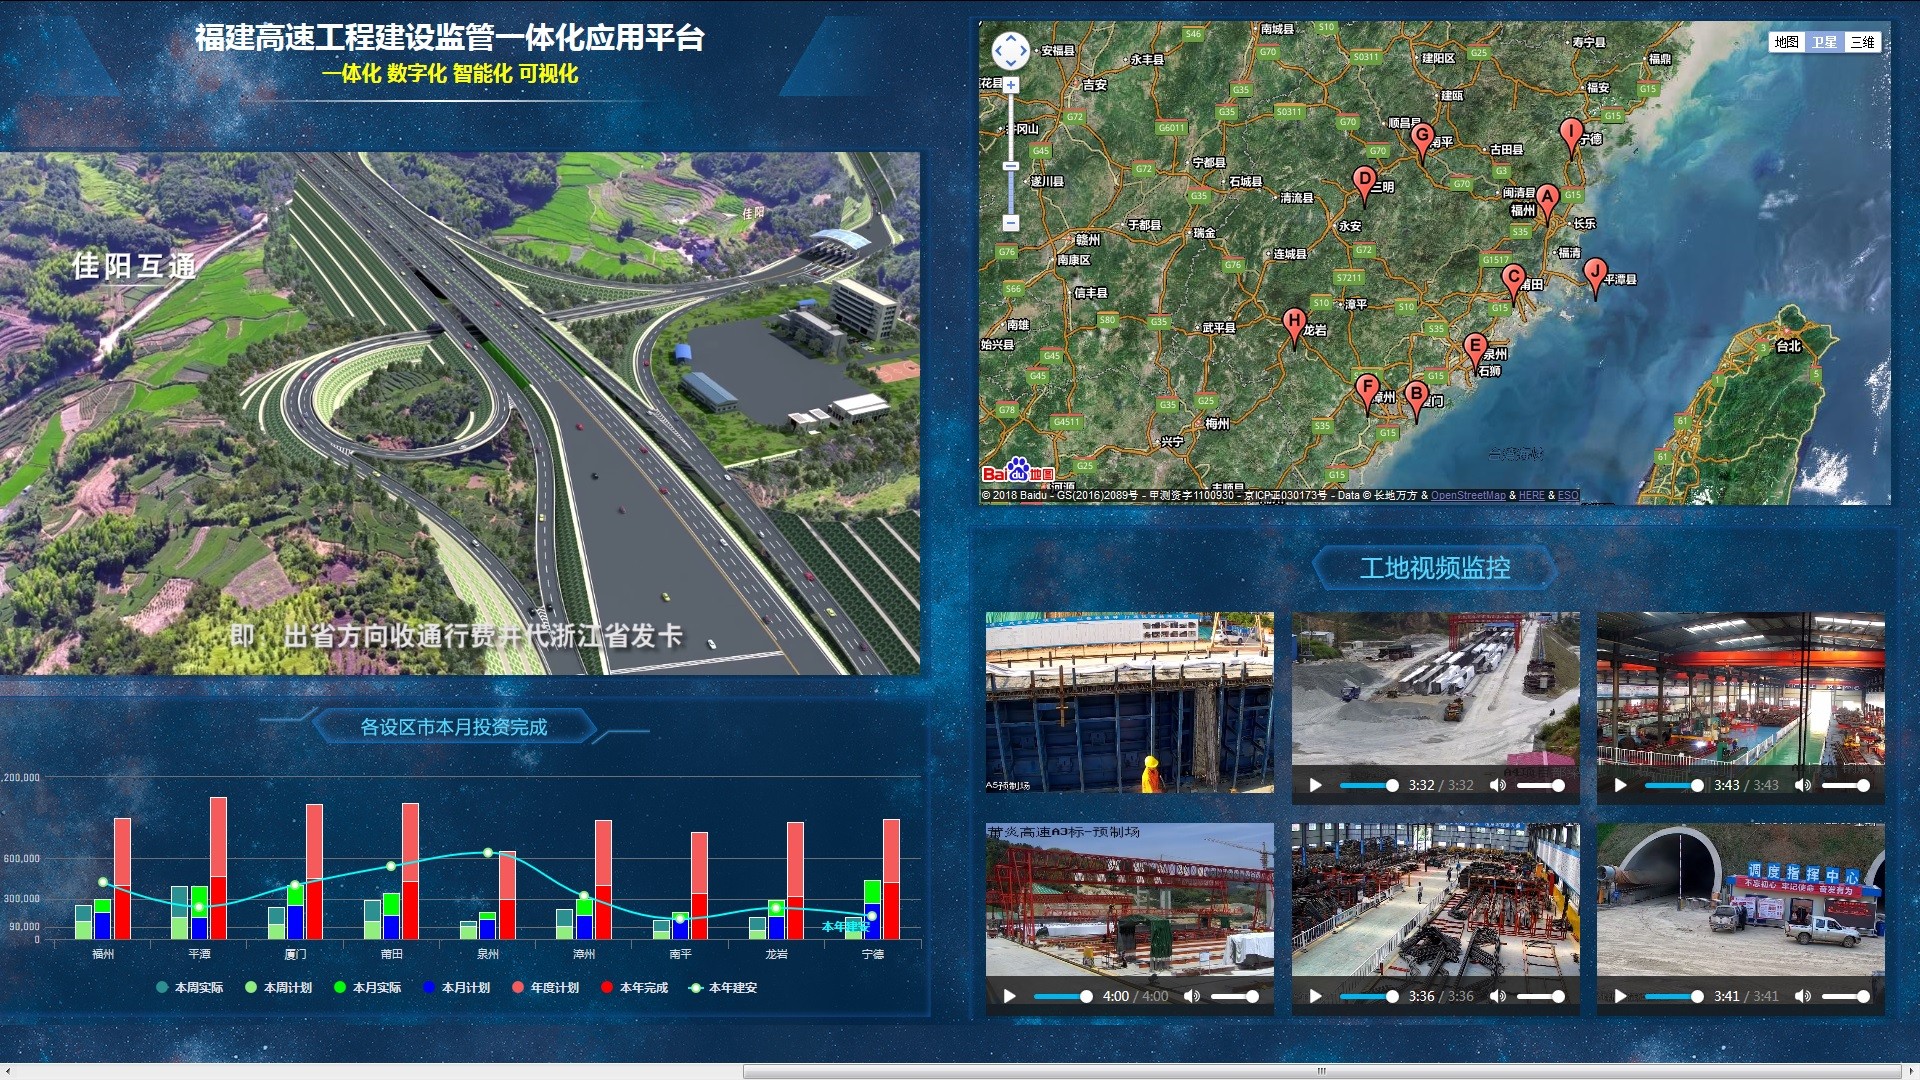 福建省高速公路信息科技有限公司